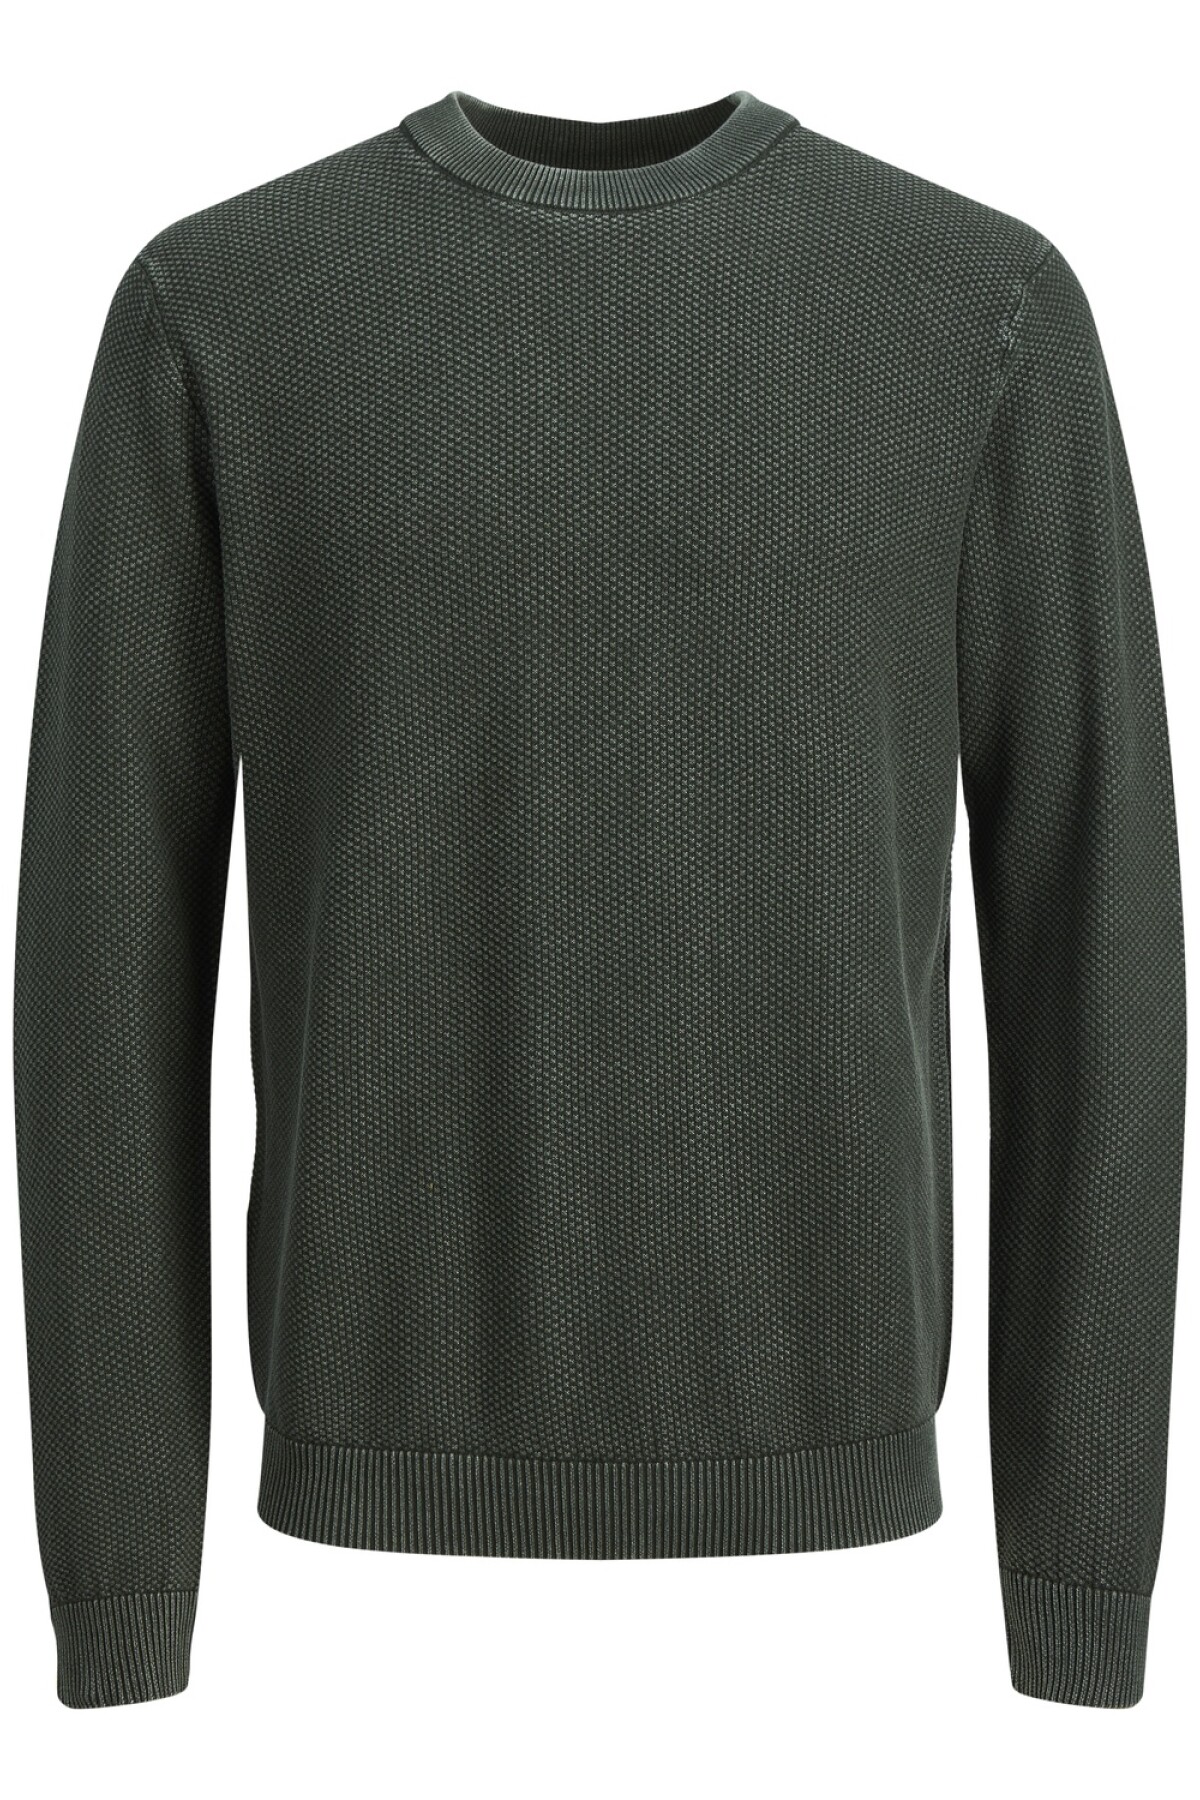 Sweater George Tejido Básico Pine Grove